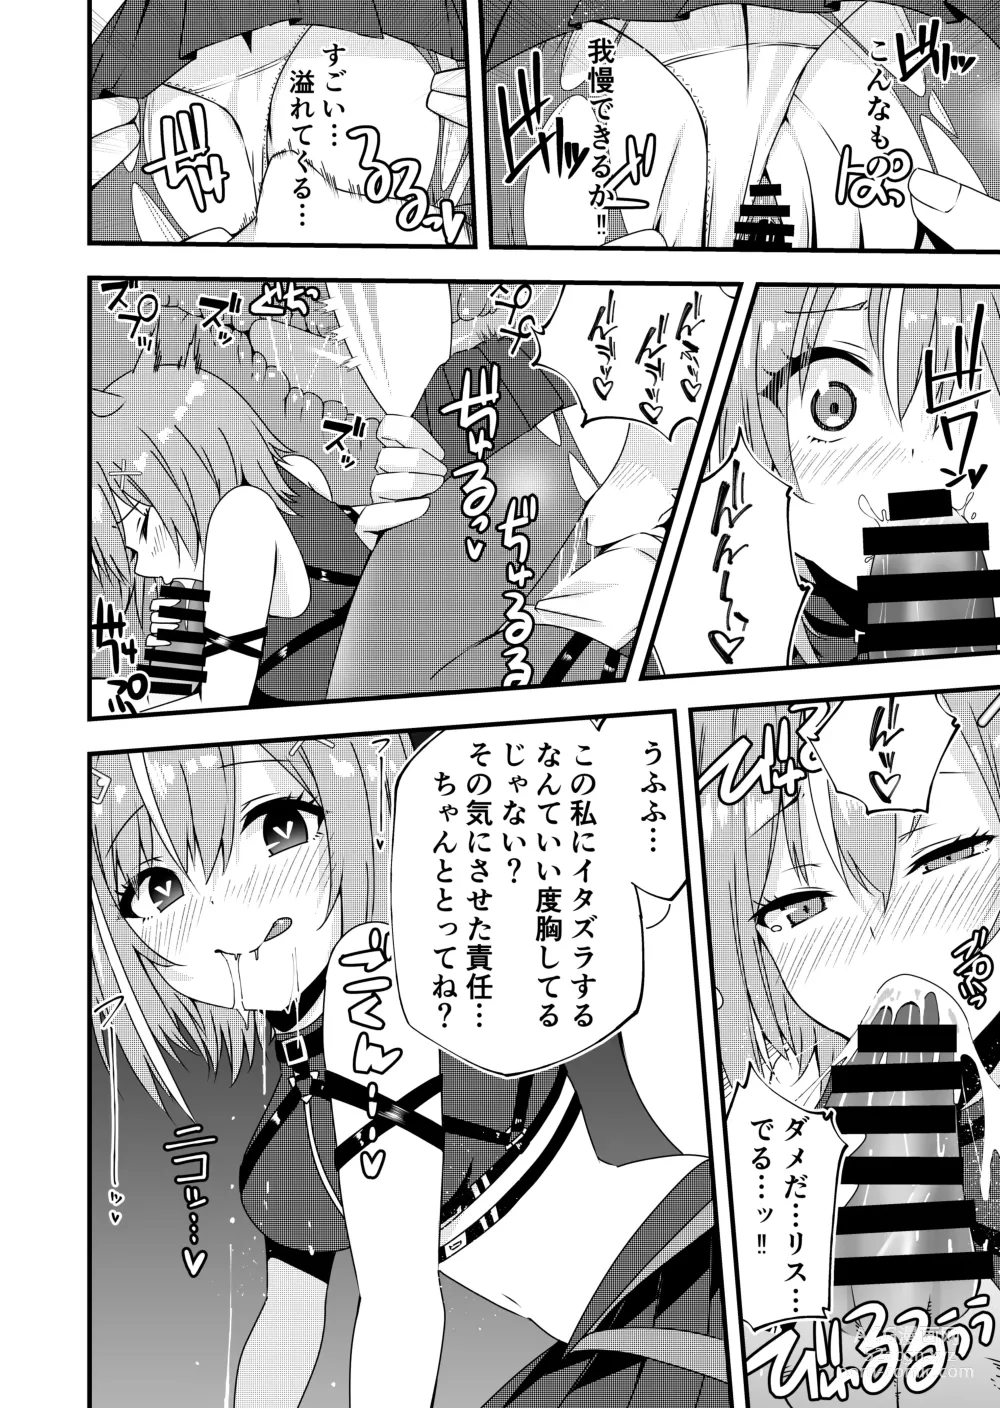 Page 4 of doujinshi Risu-chan to Karaoke Ecchi